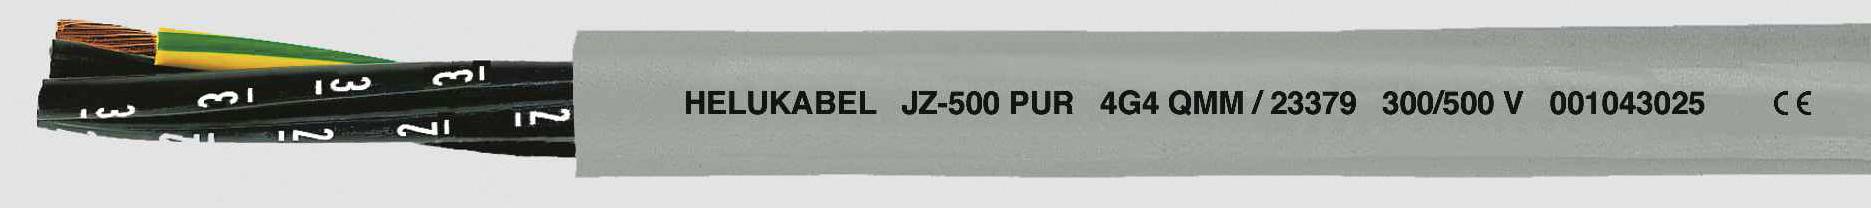 HELUKABEL JZ-500 PUR Steuerleitung 7 G 1.50 mm² Grau 23367-500 500 m